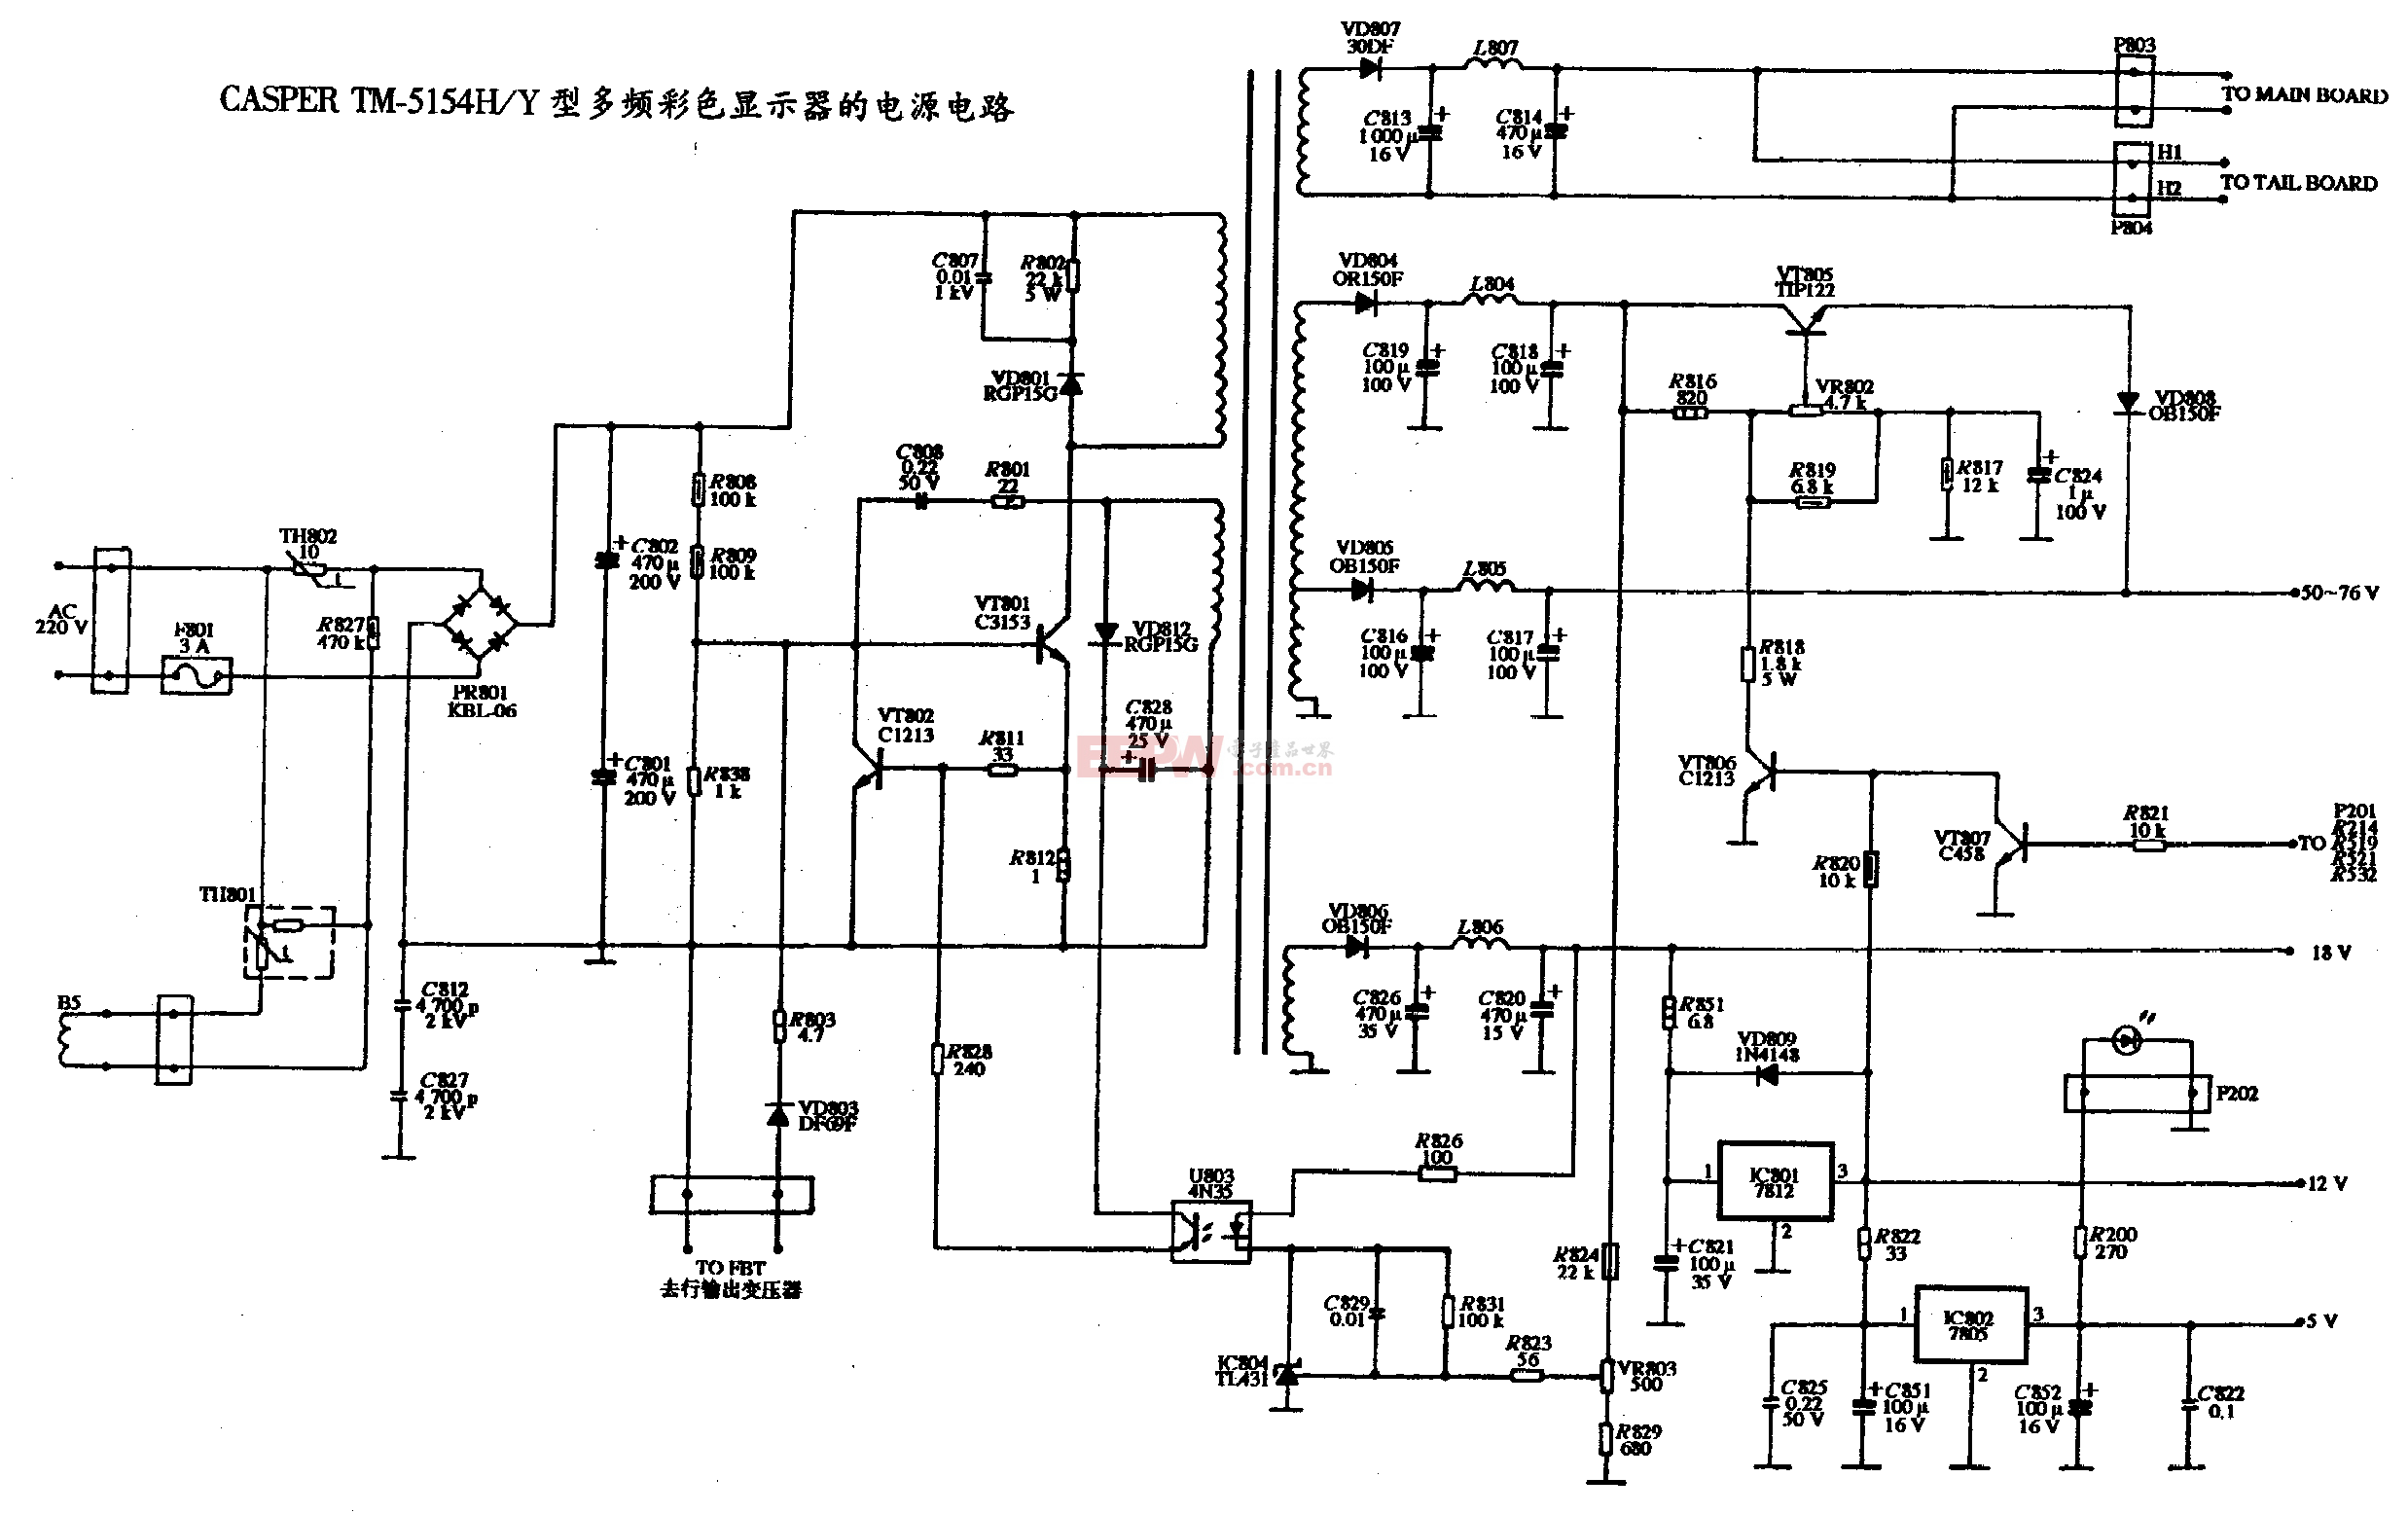 22、CASPER TM-5154HY型多頻彩色顯示器的電源電路圖